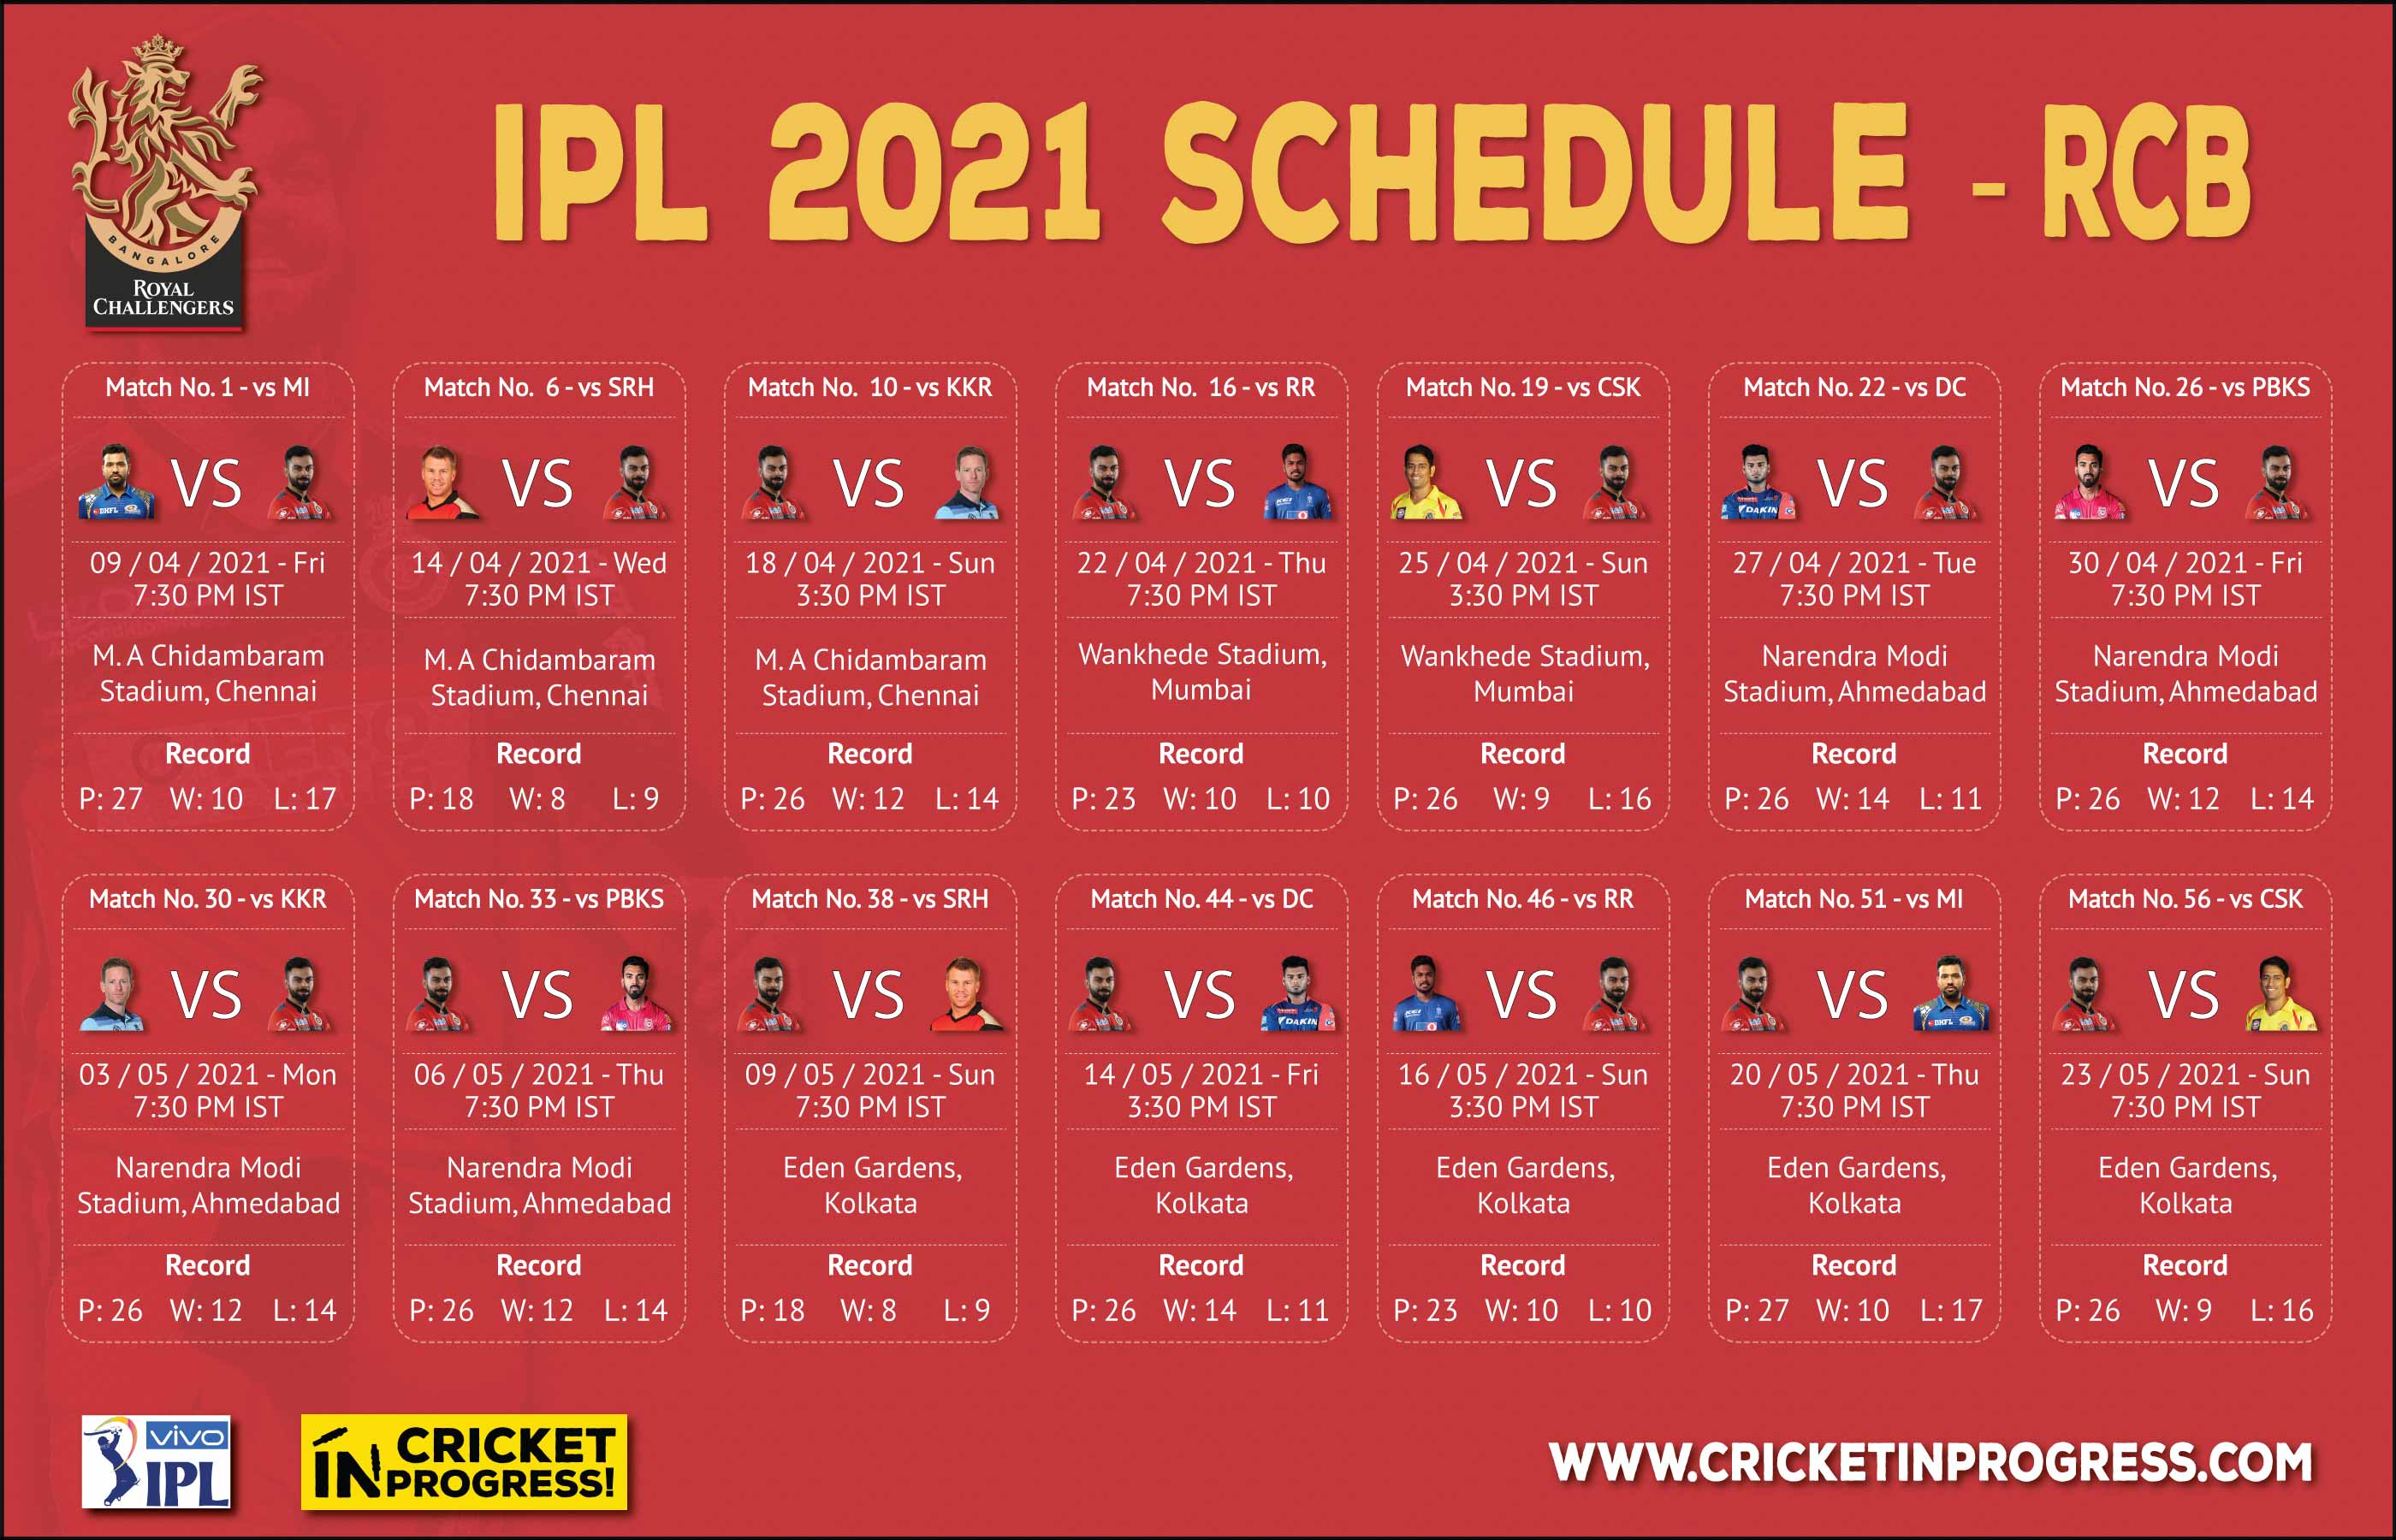 IPL 2021 RCB Schedule